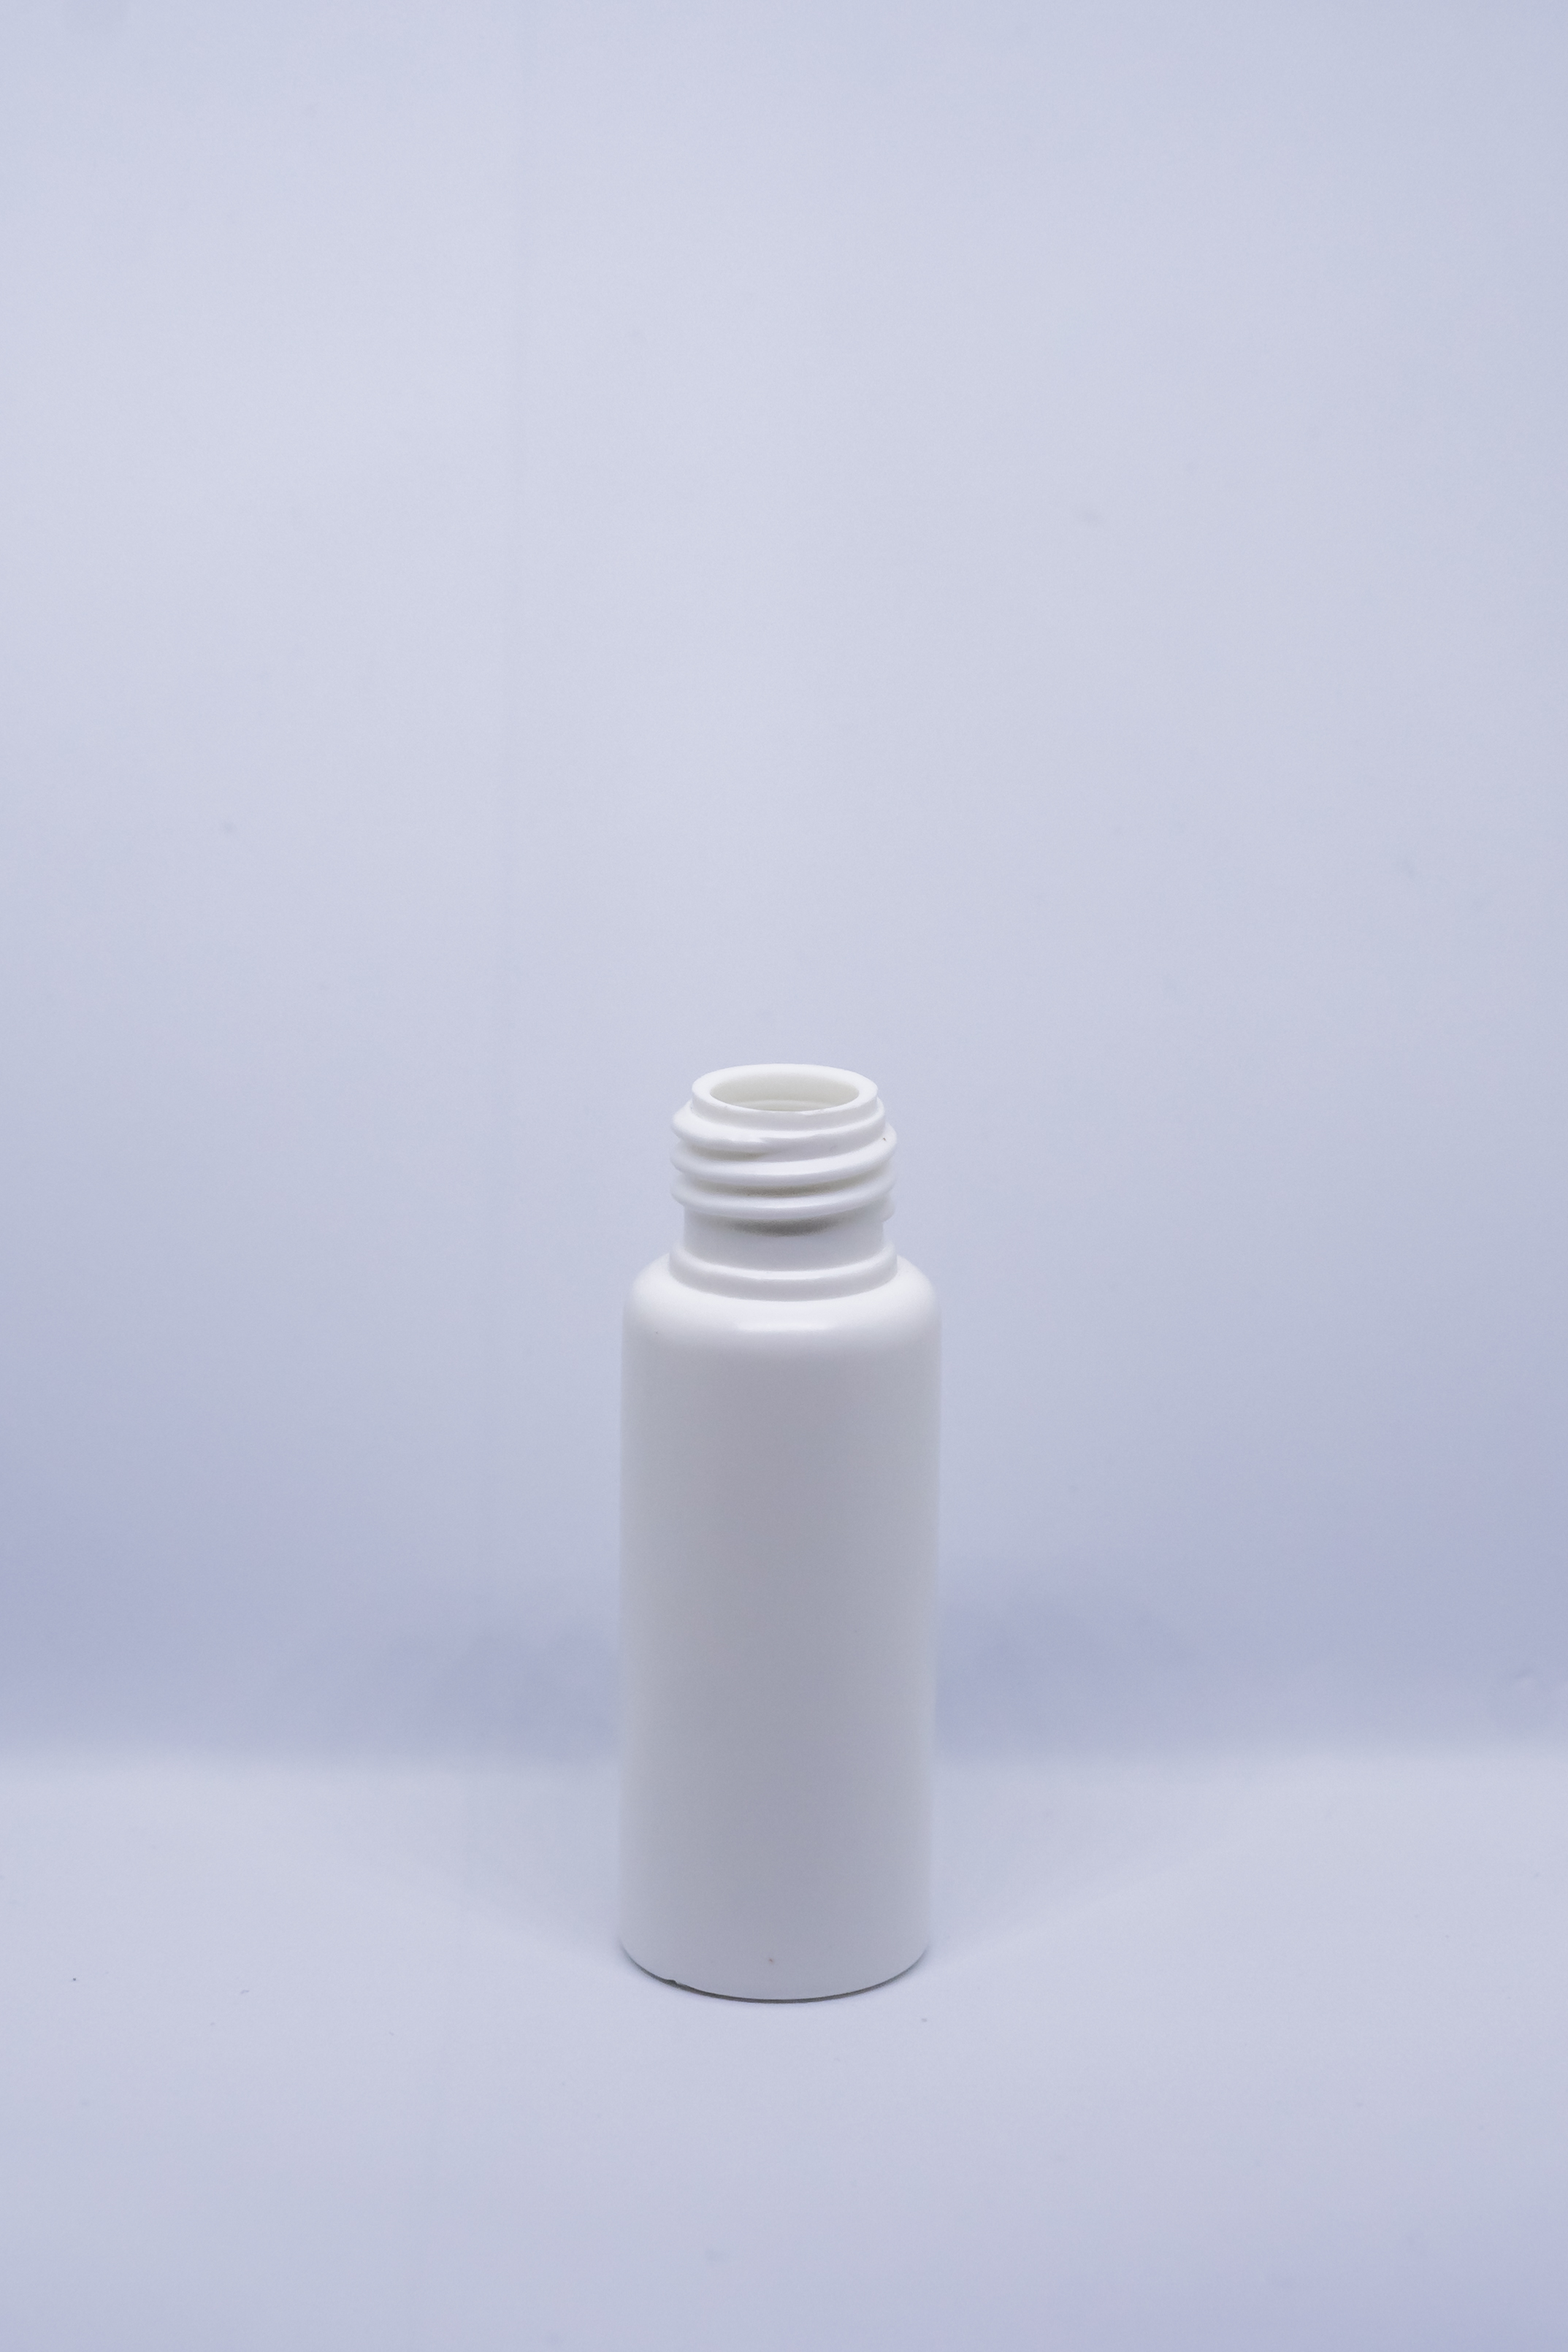 בקבוק 18 מ"ל HDPE פייה 17 מ"מ לבן